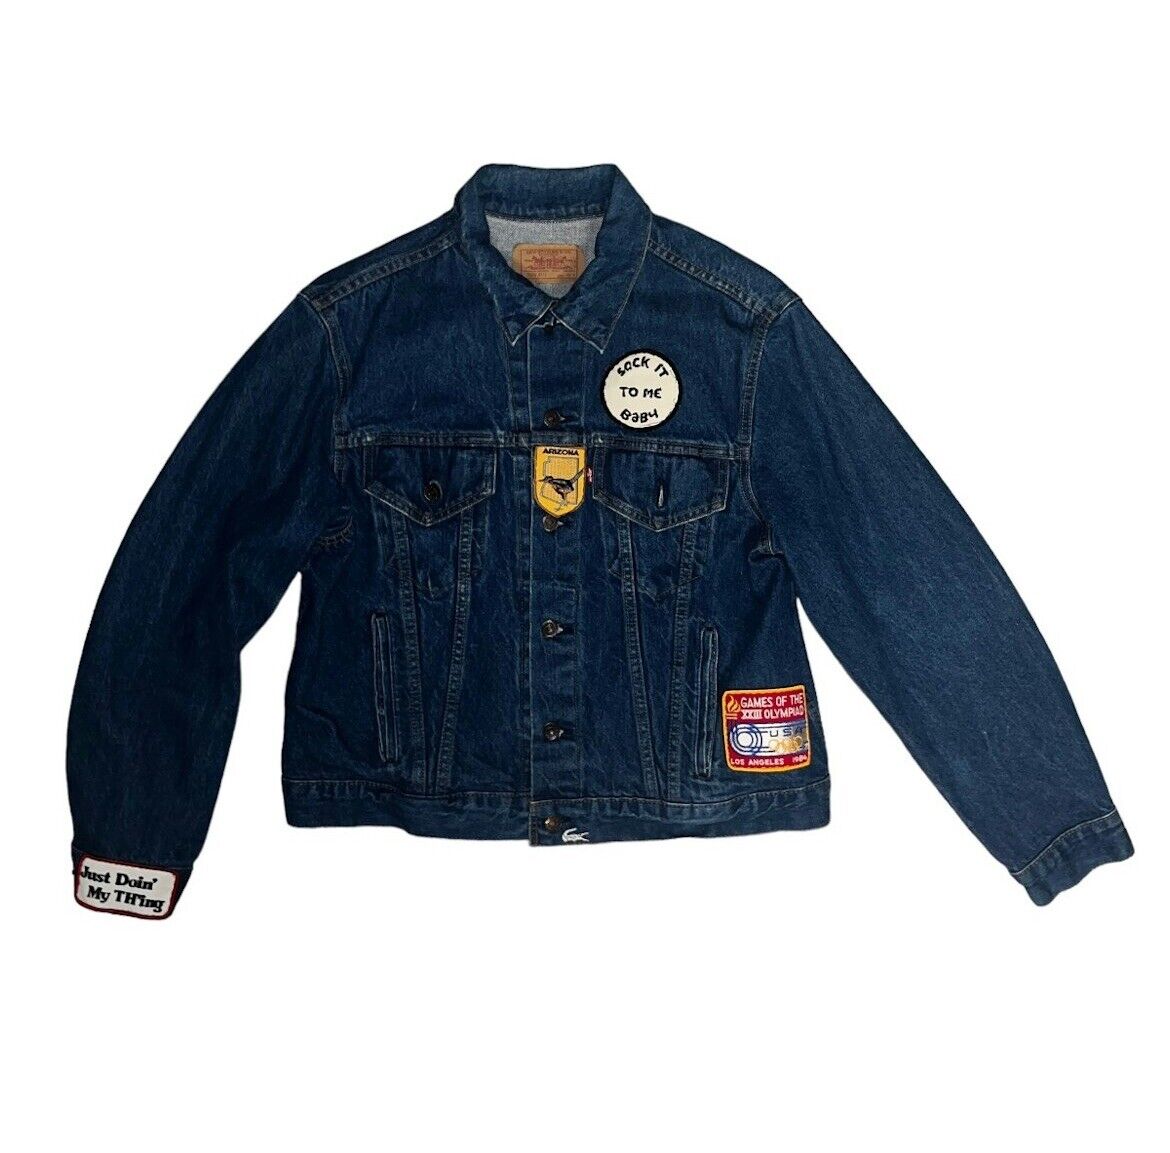 Vintage 1980s Levi’s Denim Jacket Patchwork 46R - image 1